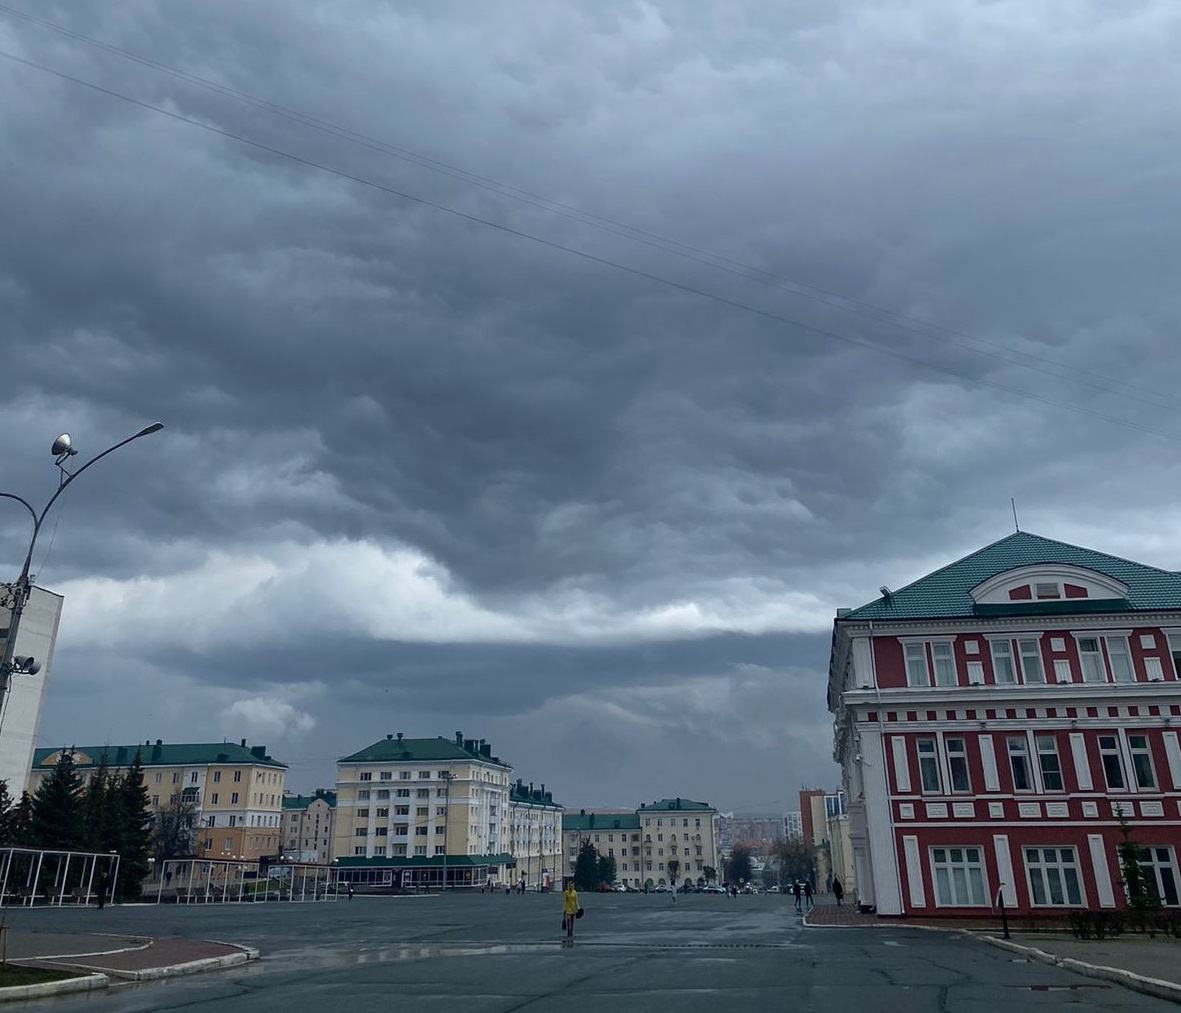 В Саранске на 22 апреля объявлено оперативное предупреждение - гроза